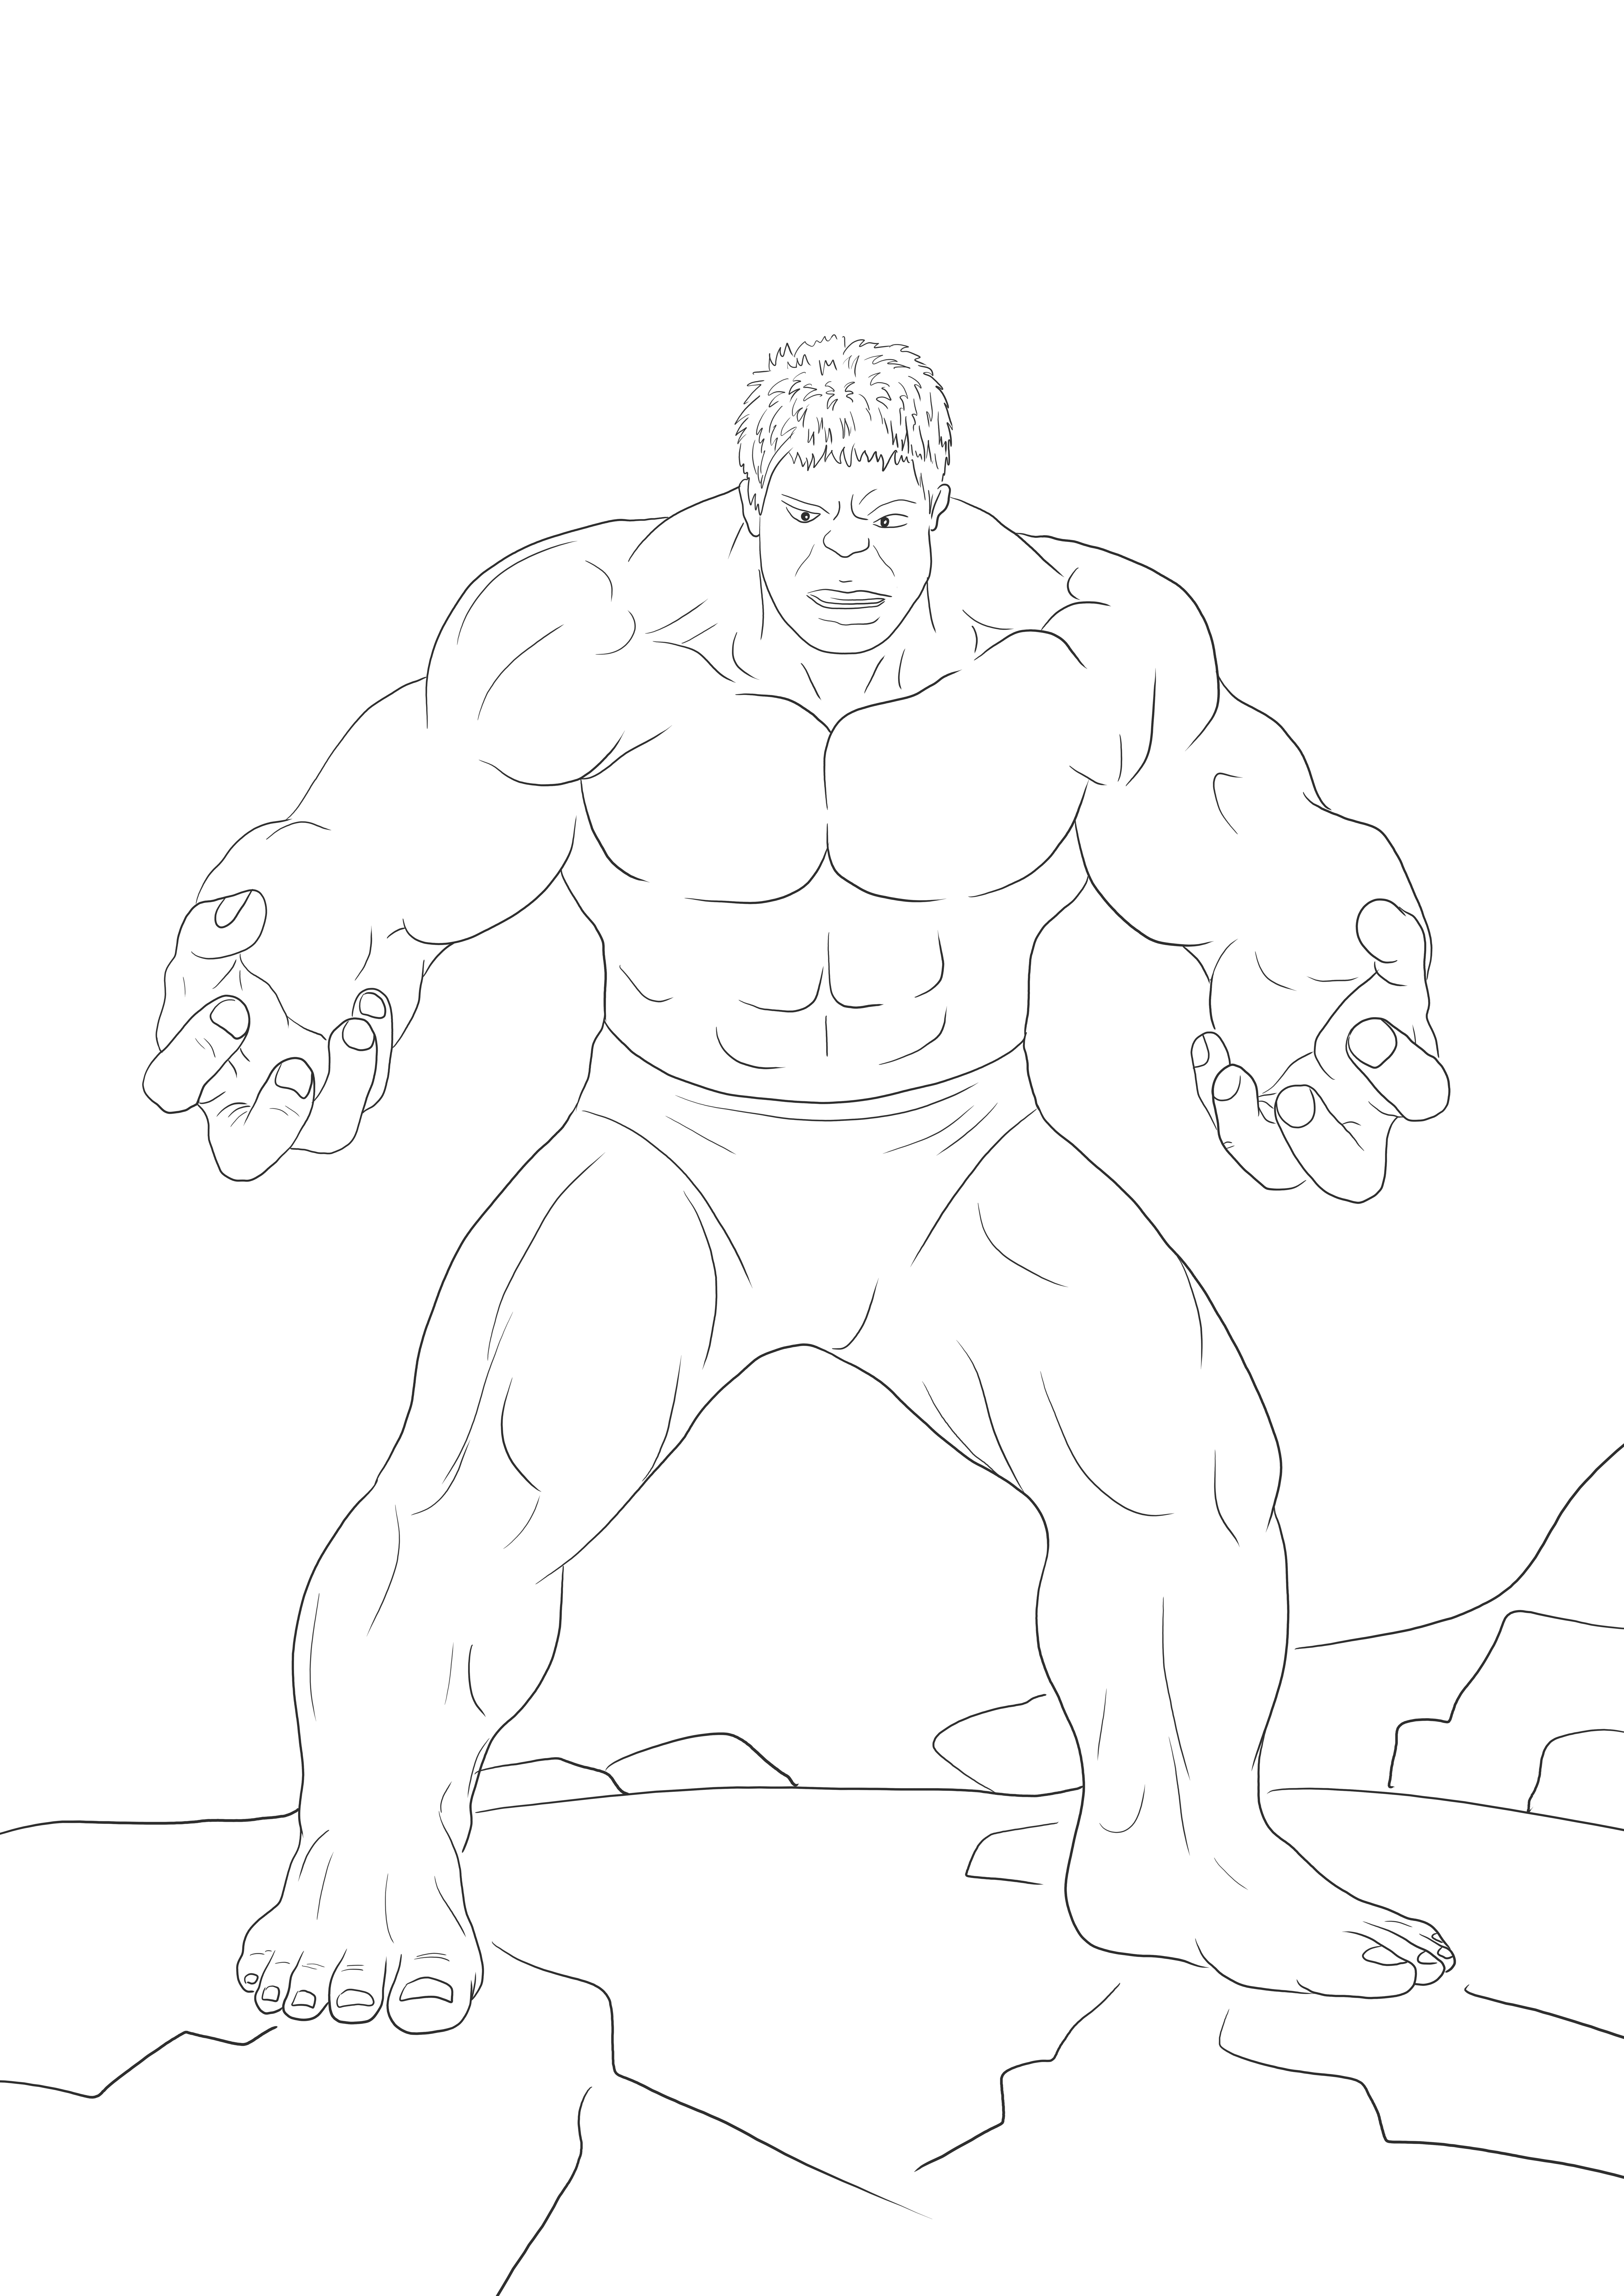 Stampabile gratuita di Hulk arrabbiato da colorare per insegnare gli eroi Marvel